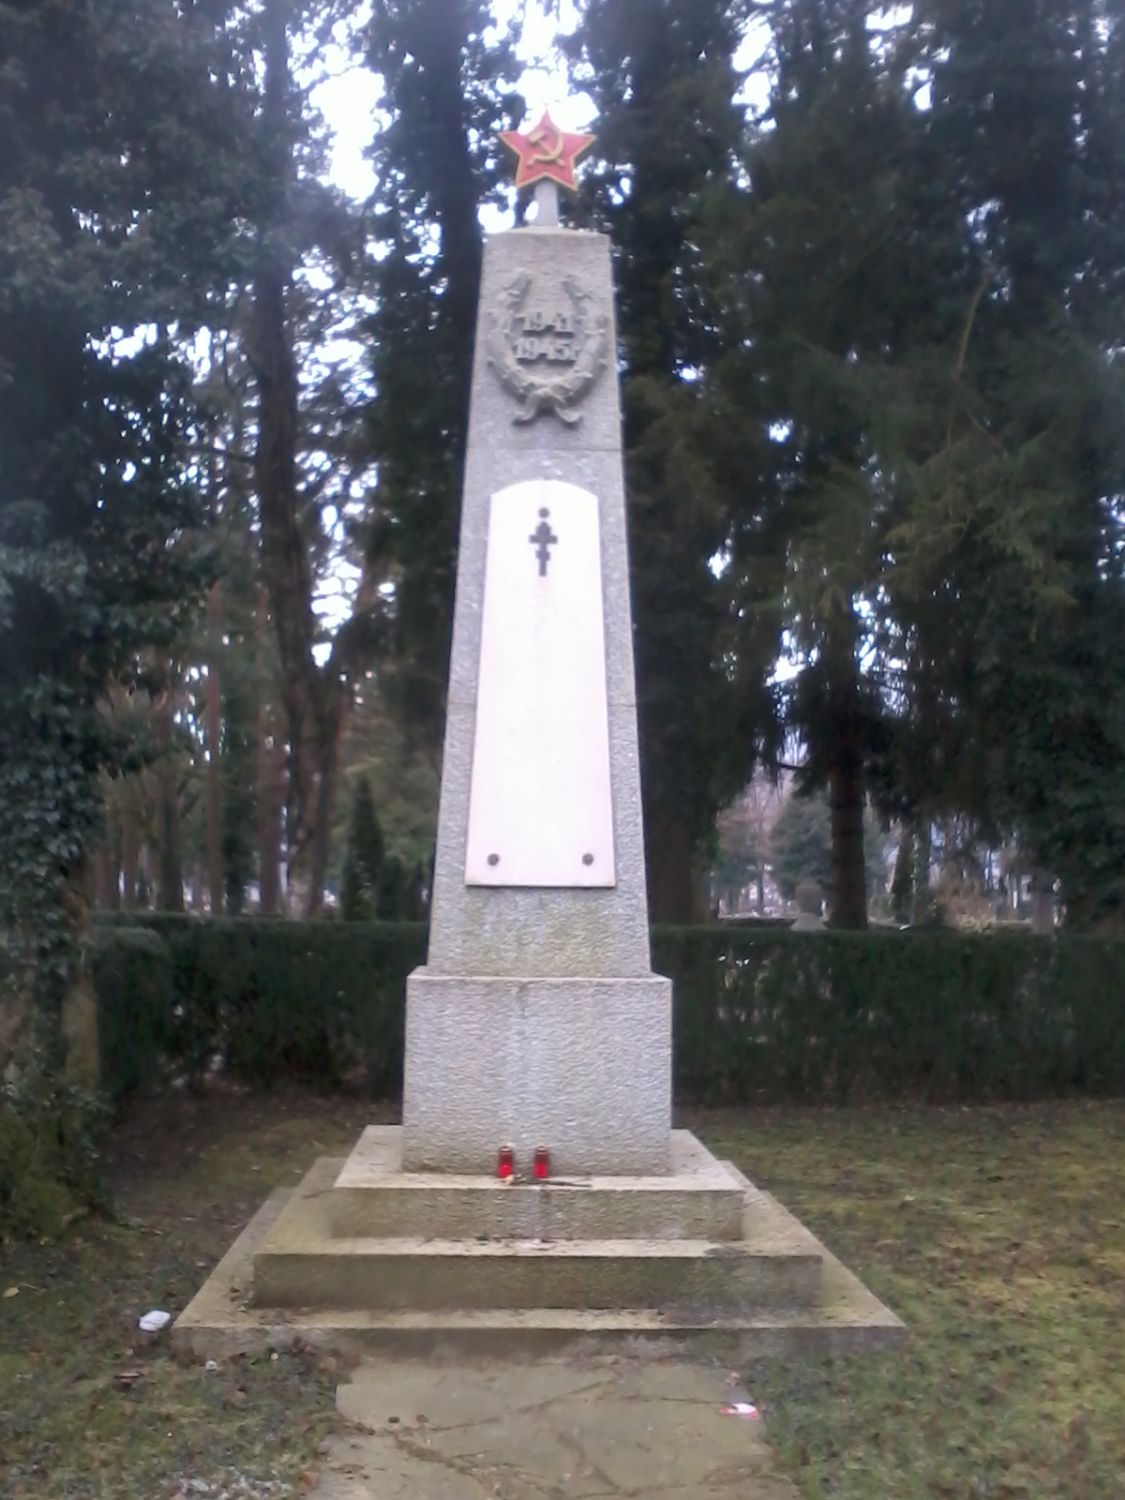 Grabmal für sovjetische Soldaten in Salzburg